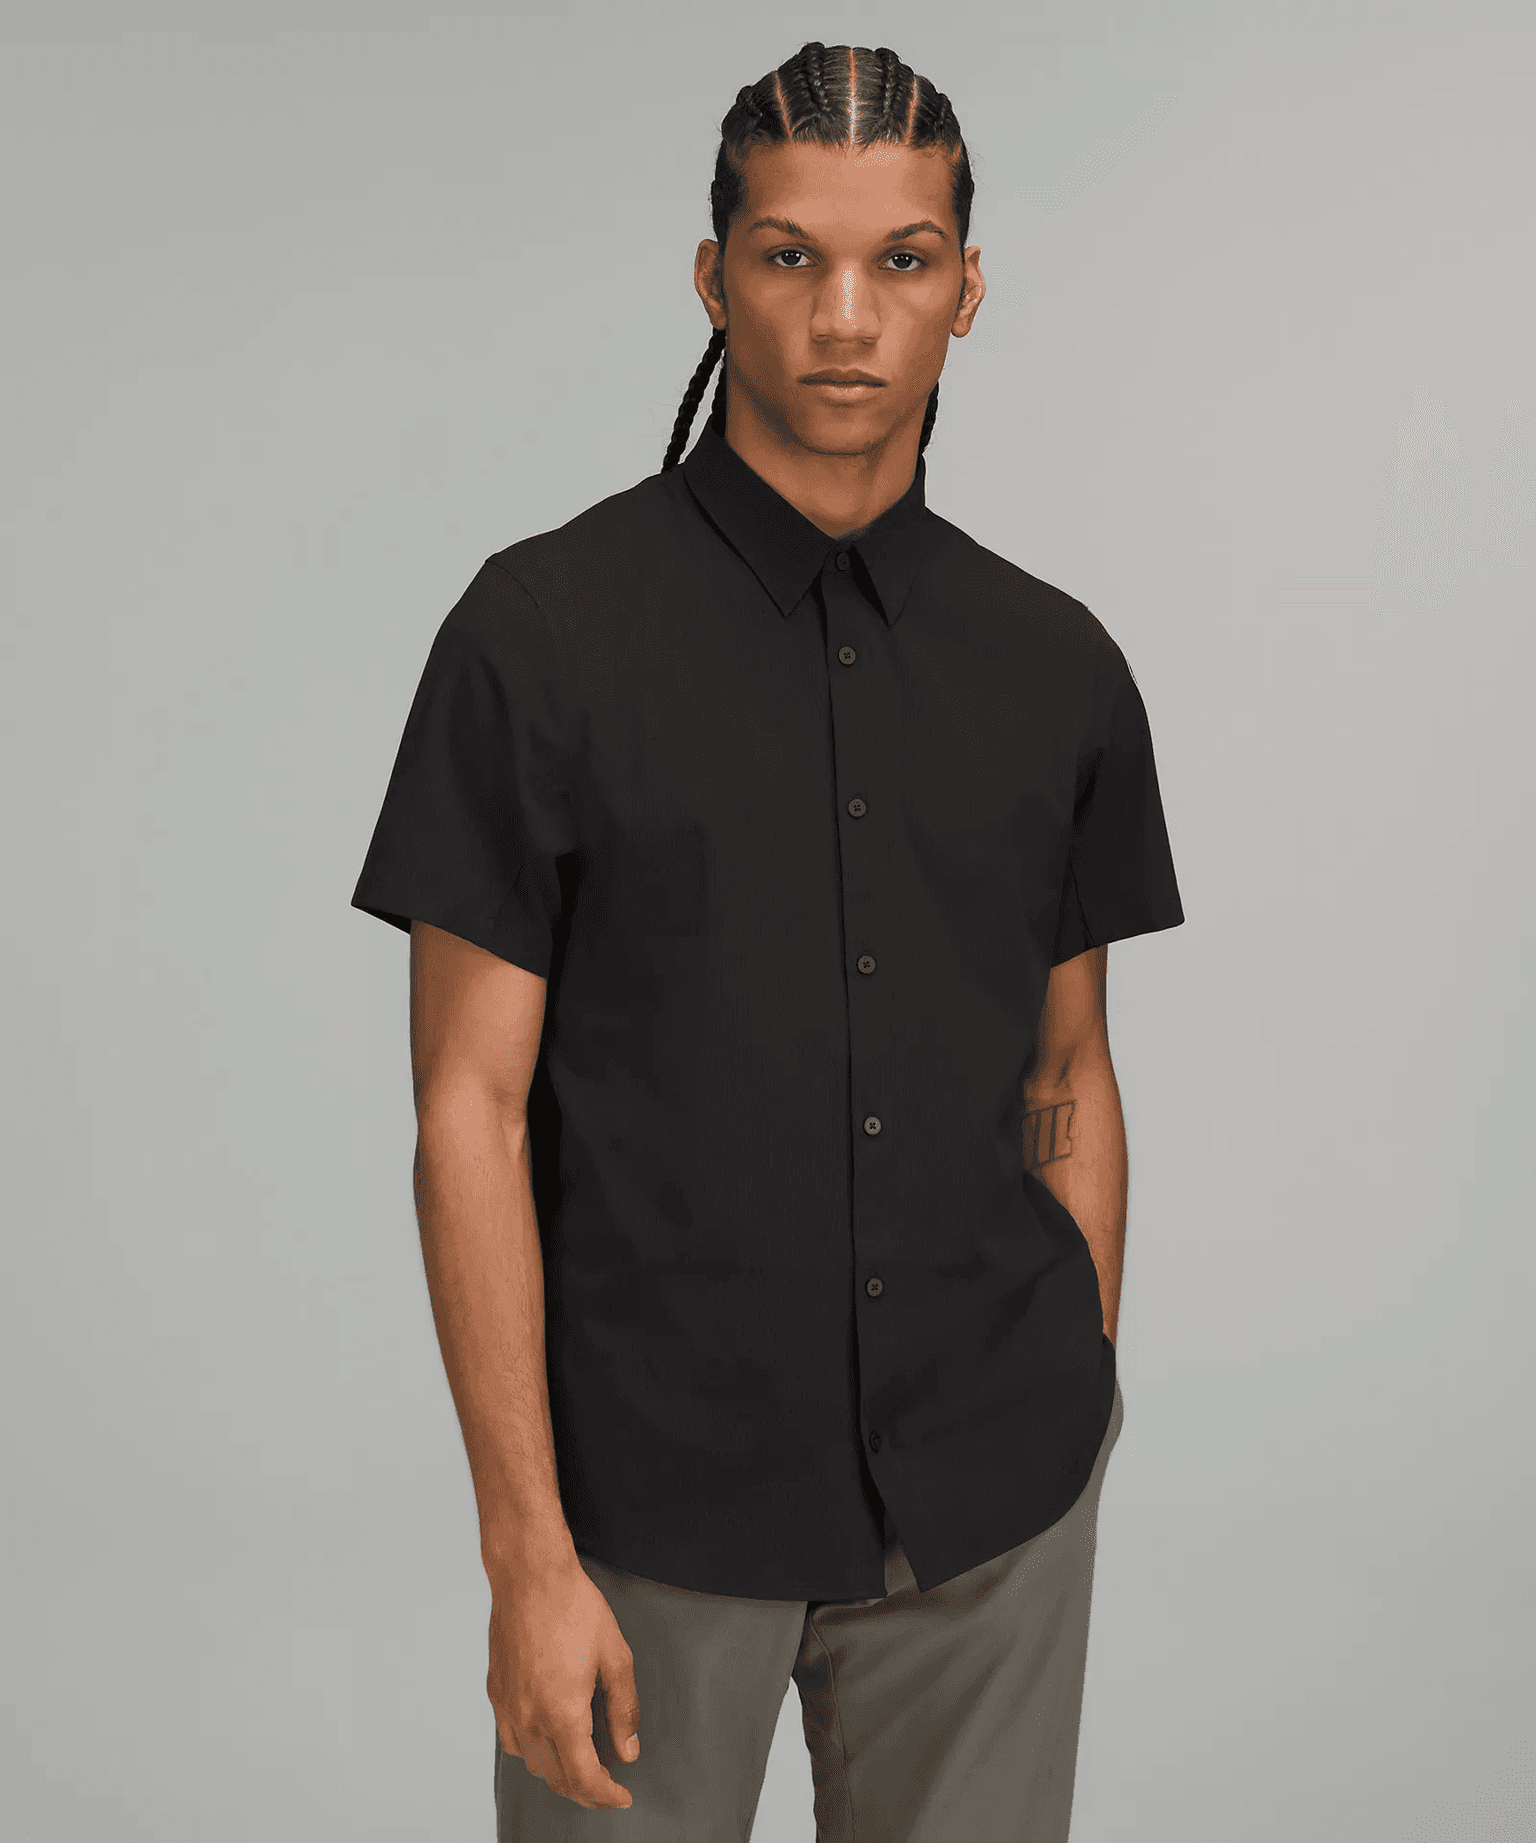 Lululemon - Airing Easy Short-Sleeve Shirt